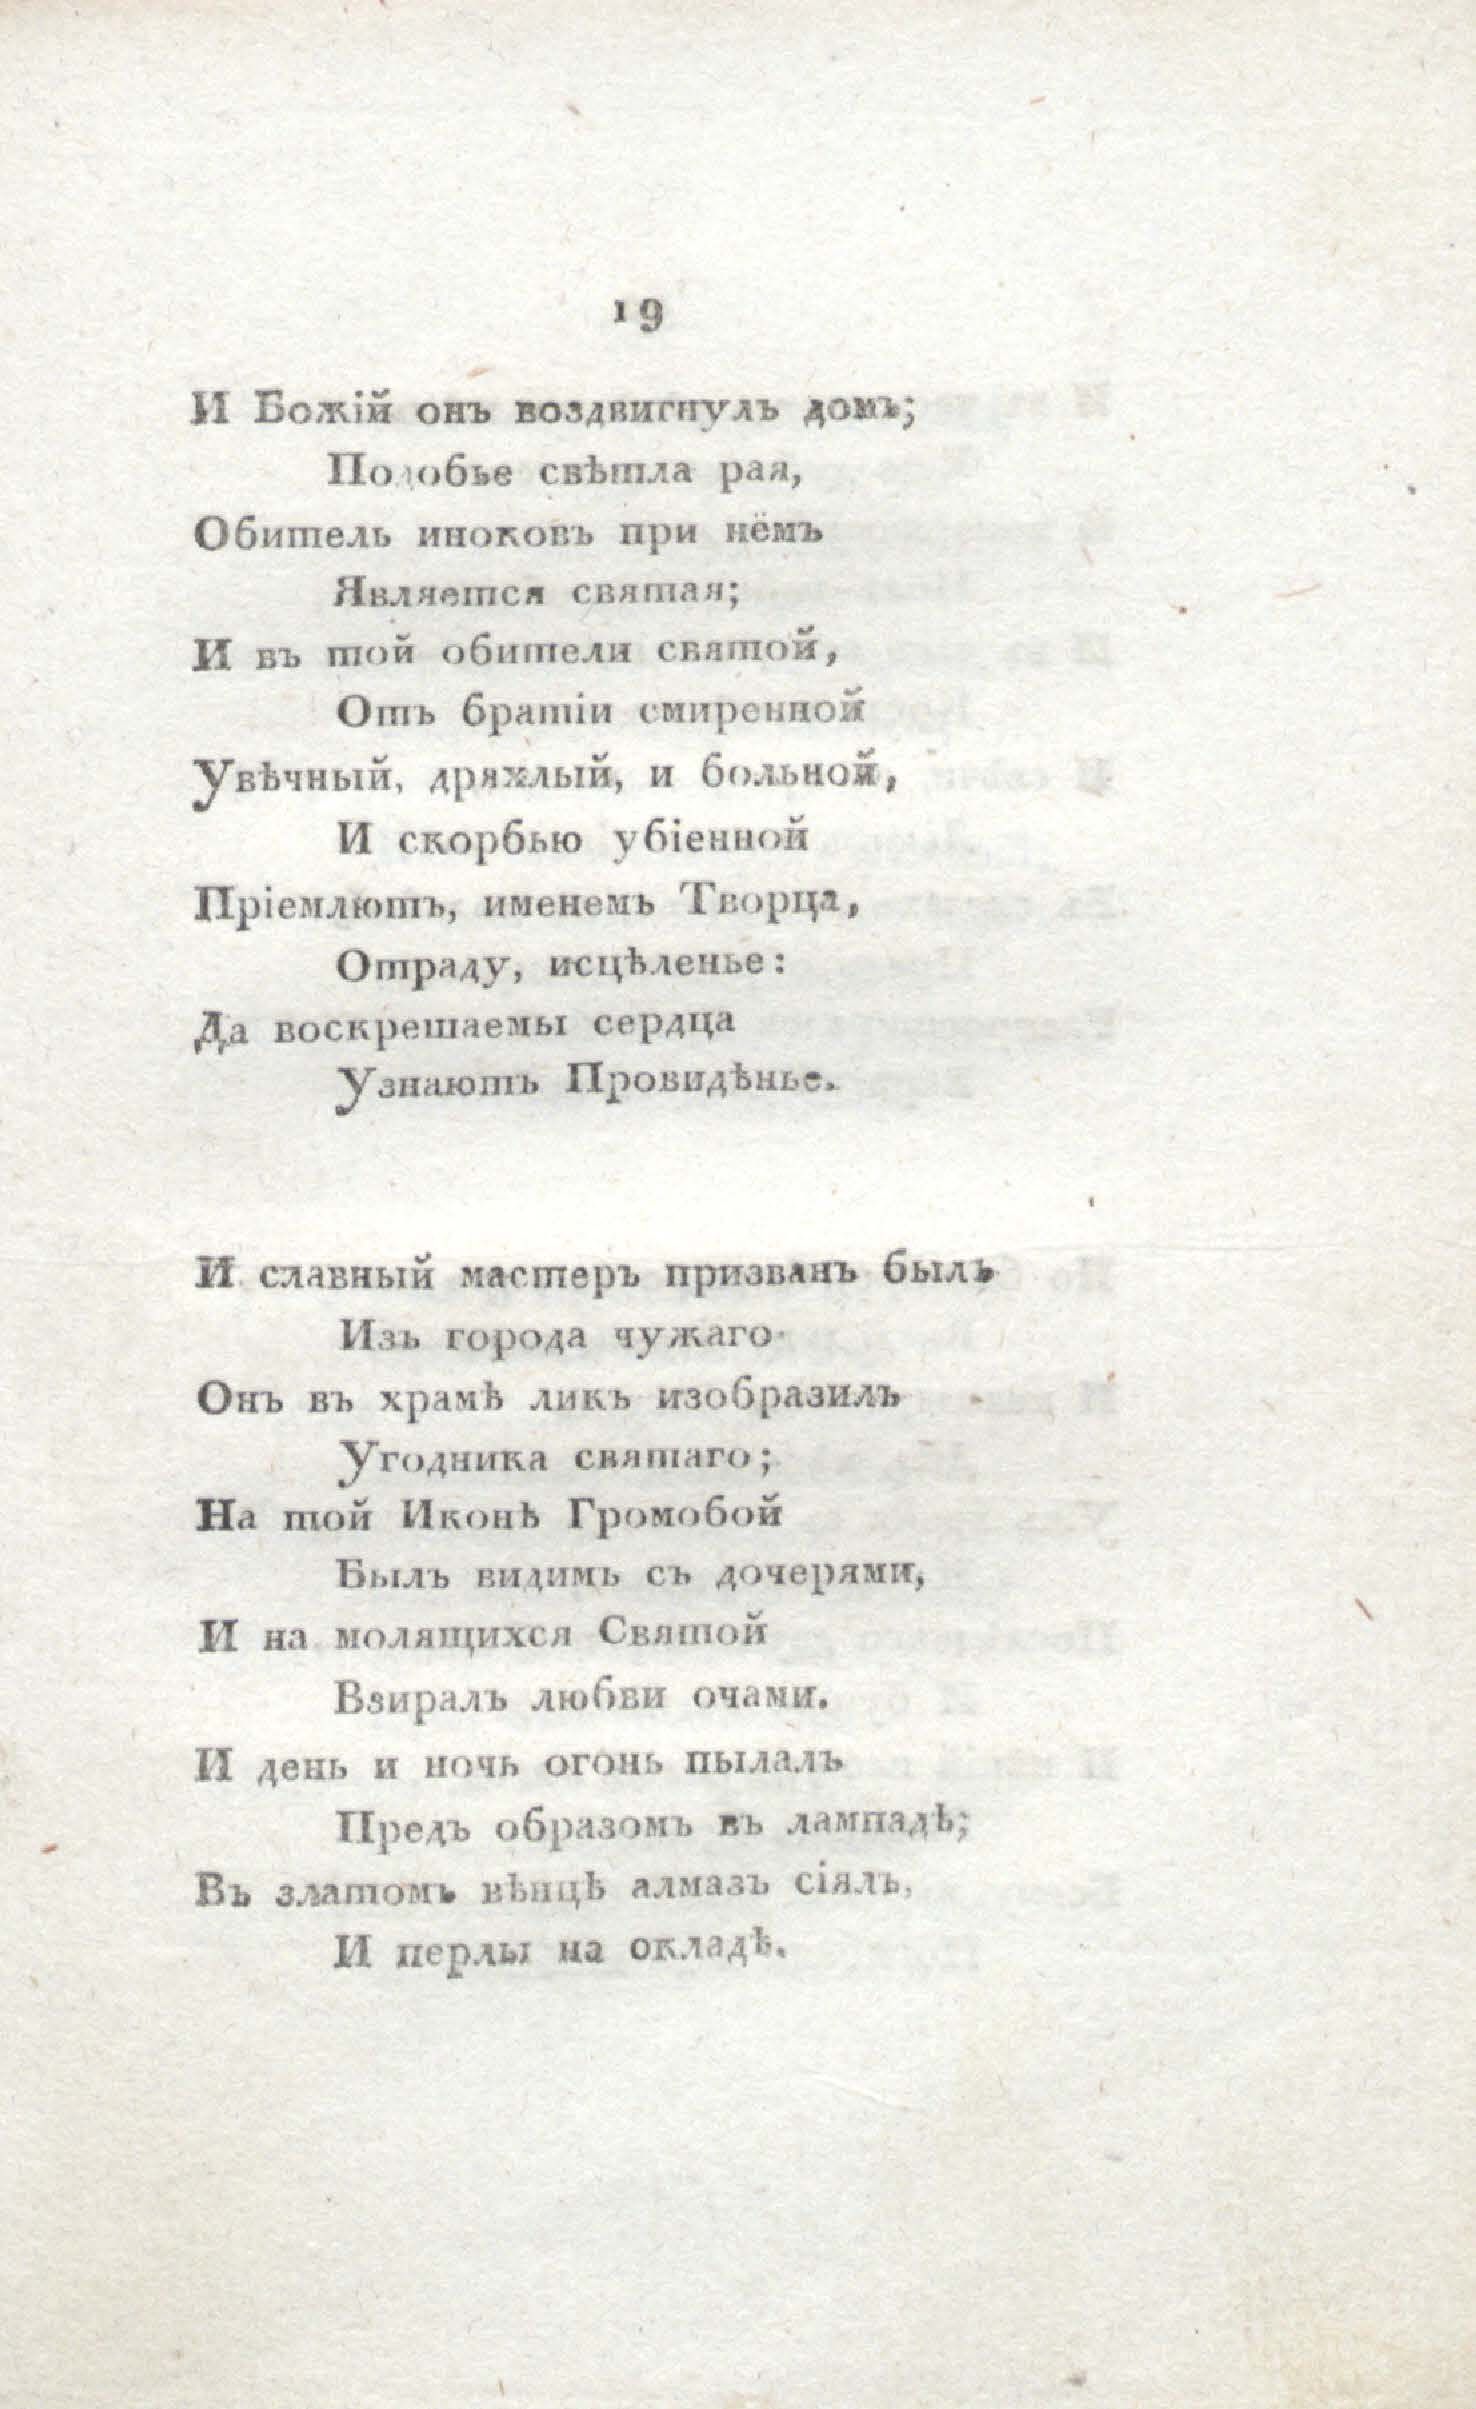 Двенадцать спящих дев (1817) | 29. (19) Main body of text